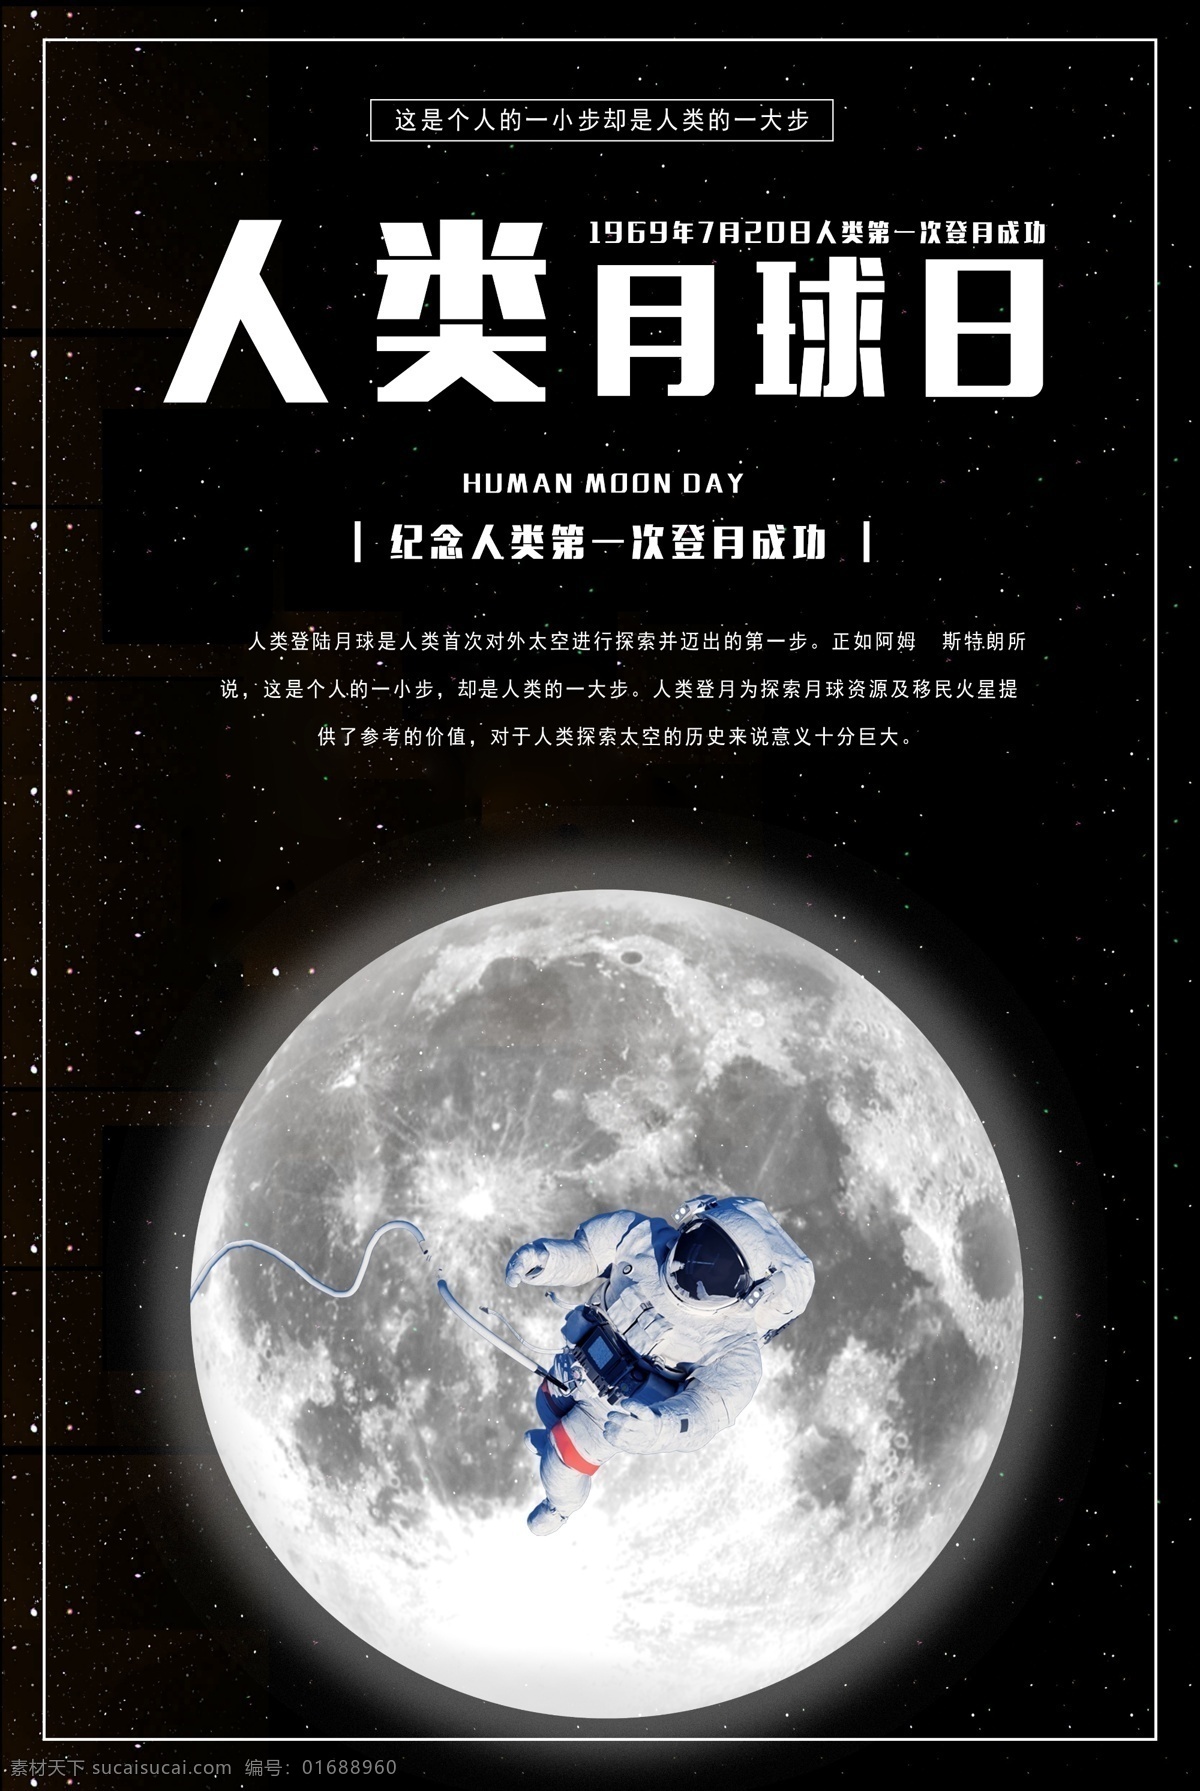 人类 月球 日 嫦娥奔月 宇航员 海报模板 人类月球日 探索太空 月球表面 风水球 每月之星 七星伴月 五月的风 玉兔号月球车 蓝月亮 月球探索 登陆月球 太空月球 月球日